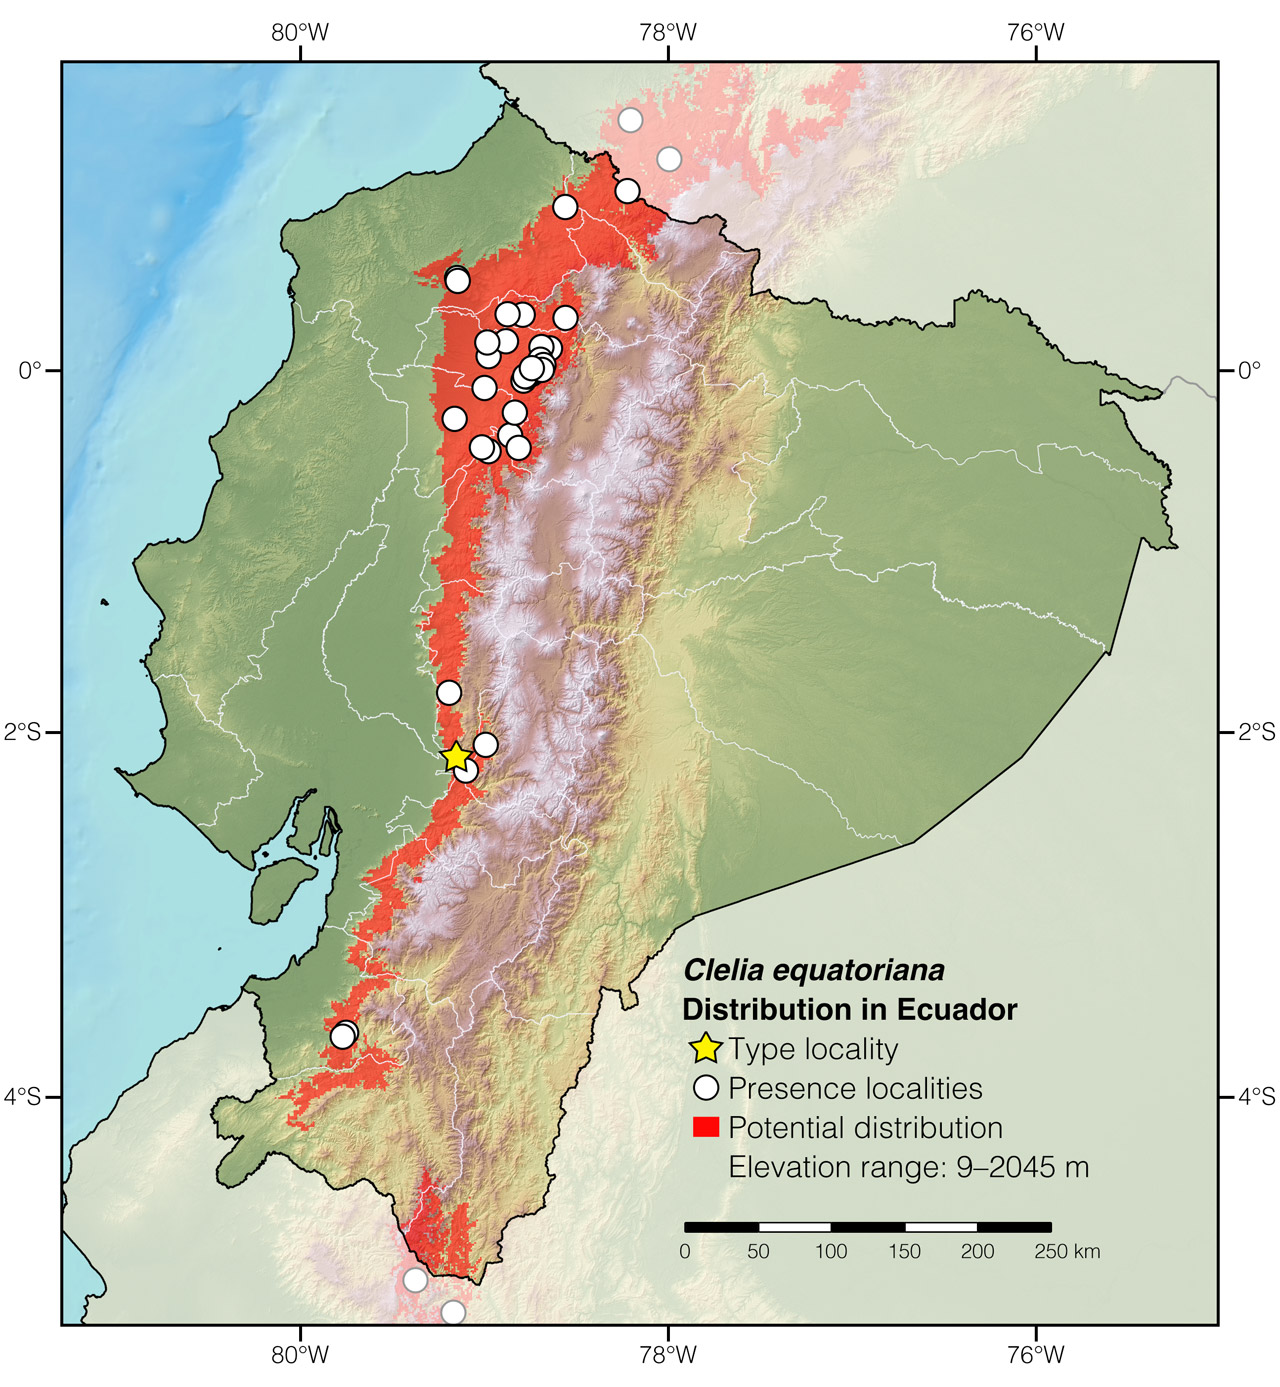 Distribution of Clelia equatoriana in Ecuador